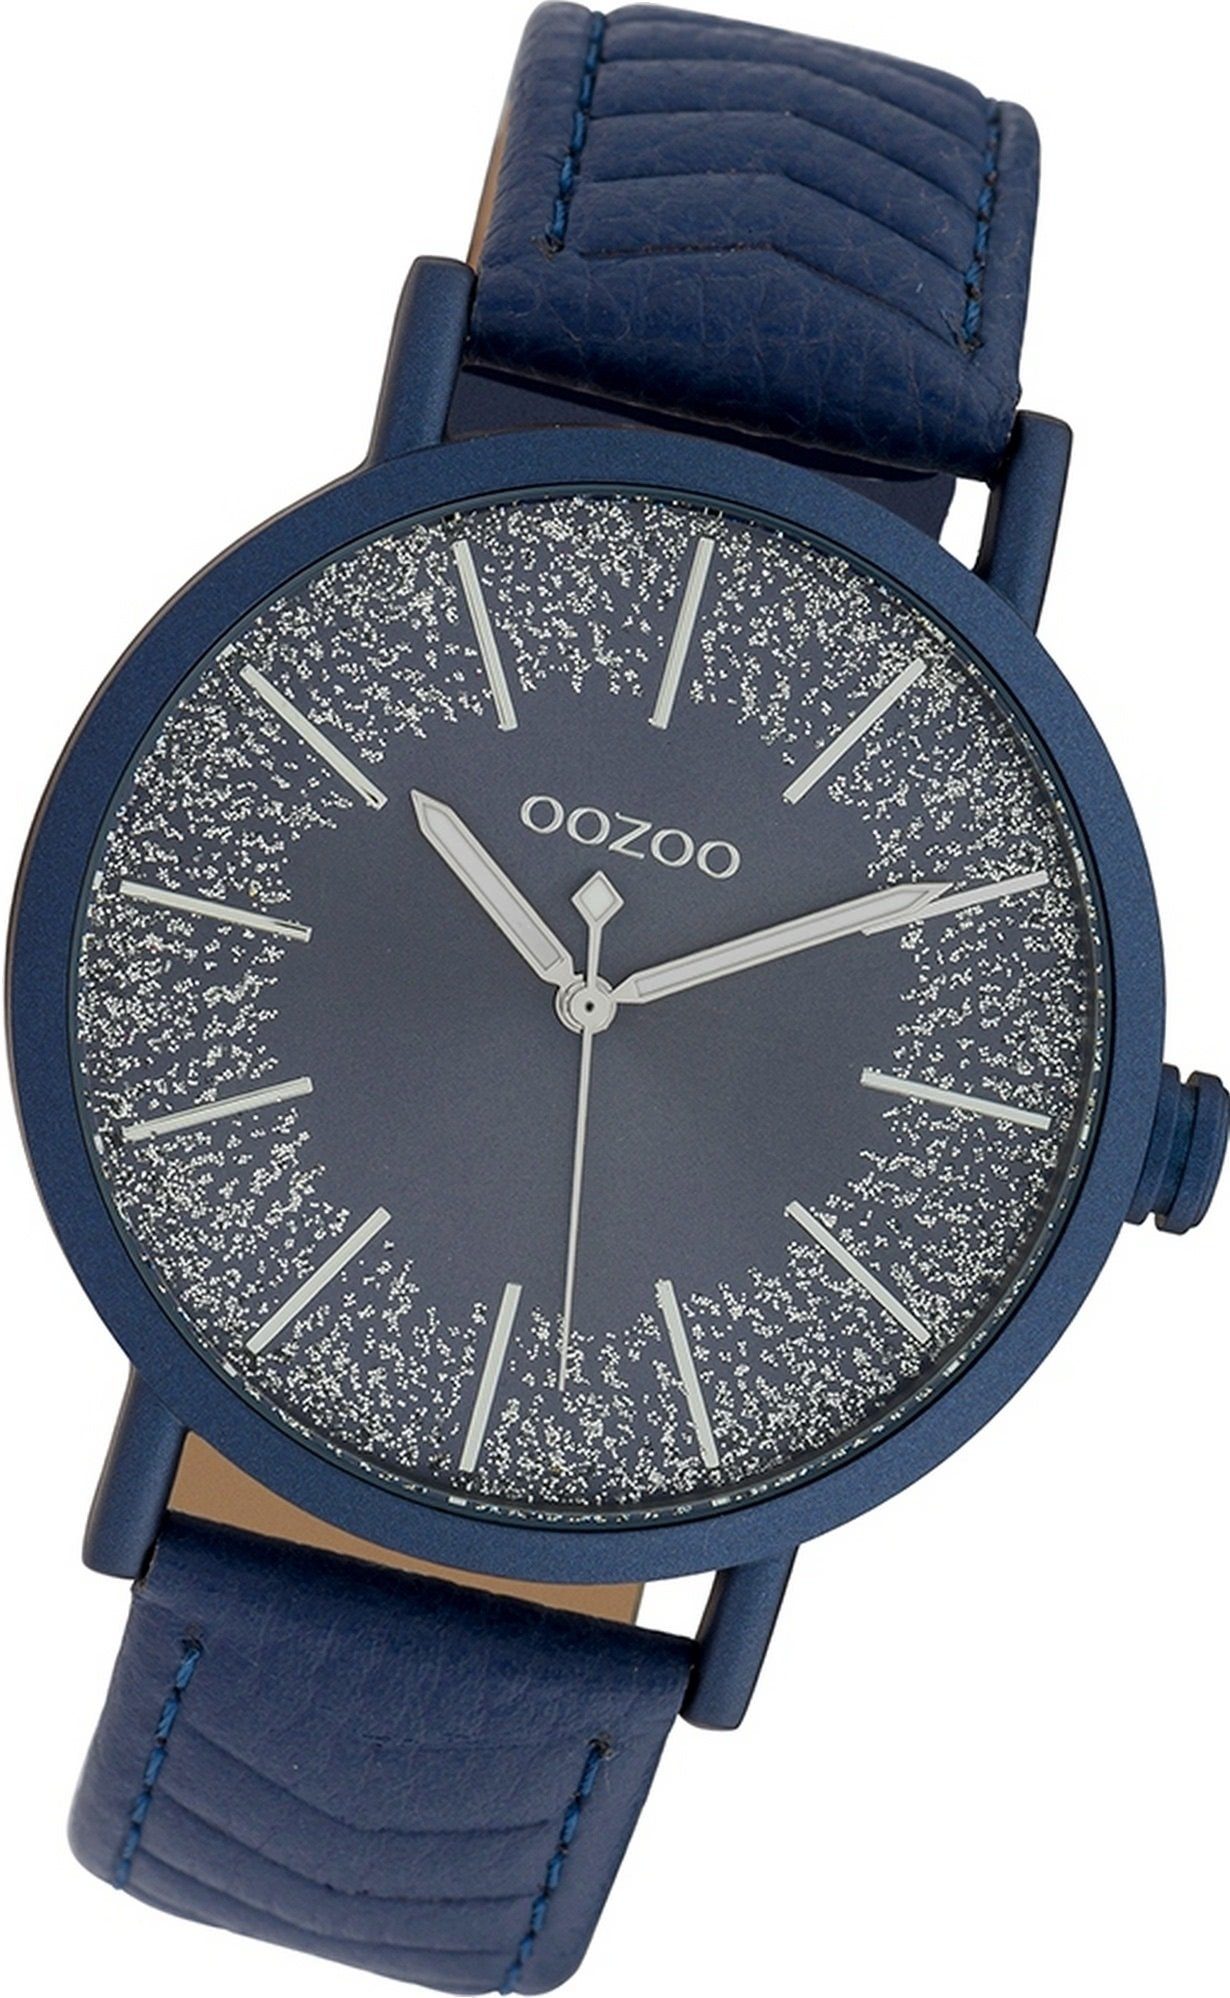 OOZOO Quarzuhr Oozoo Leder Damen Uhr C10147 Analog, Damenuhr Lederarmband  dunkelblau, rundes Gehäuse, groß (ca. 42mm)